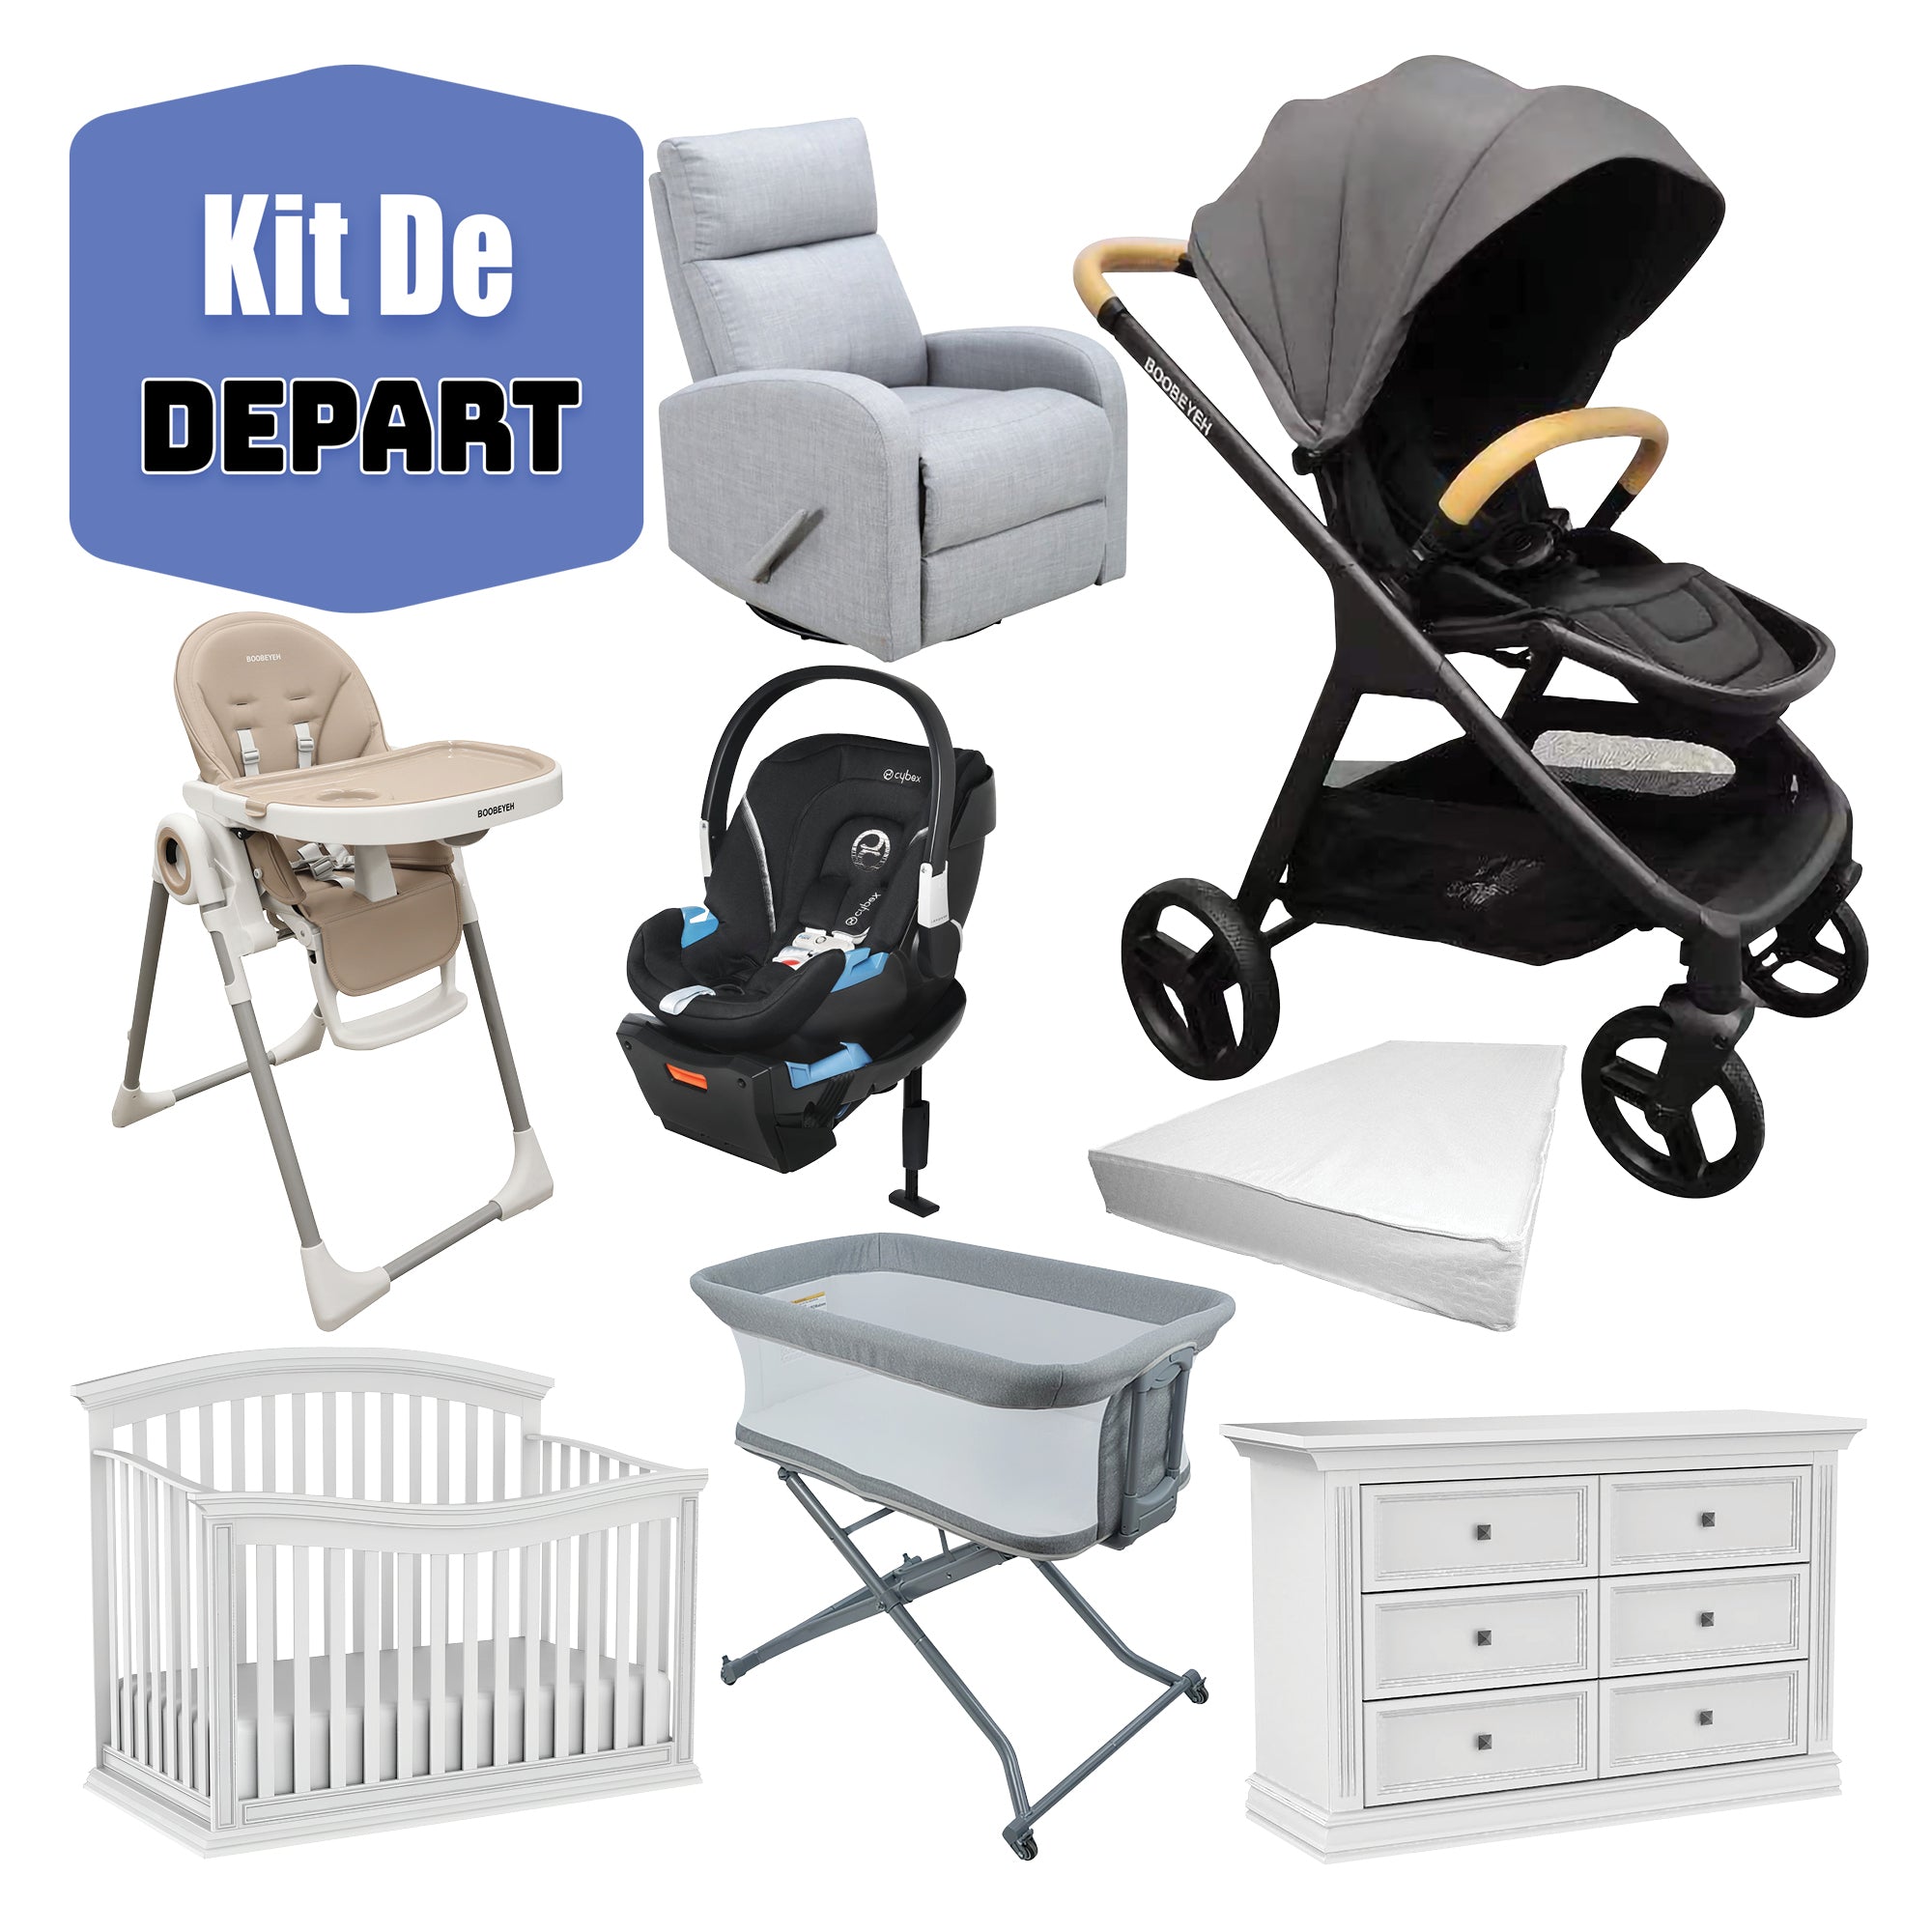 Kit de depart poussette boobeyeh, chaise bercante, siège auto Graco, lit de bébé, bureau double, chaise haute, bassinette et matelas de base